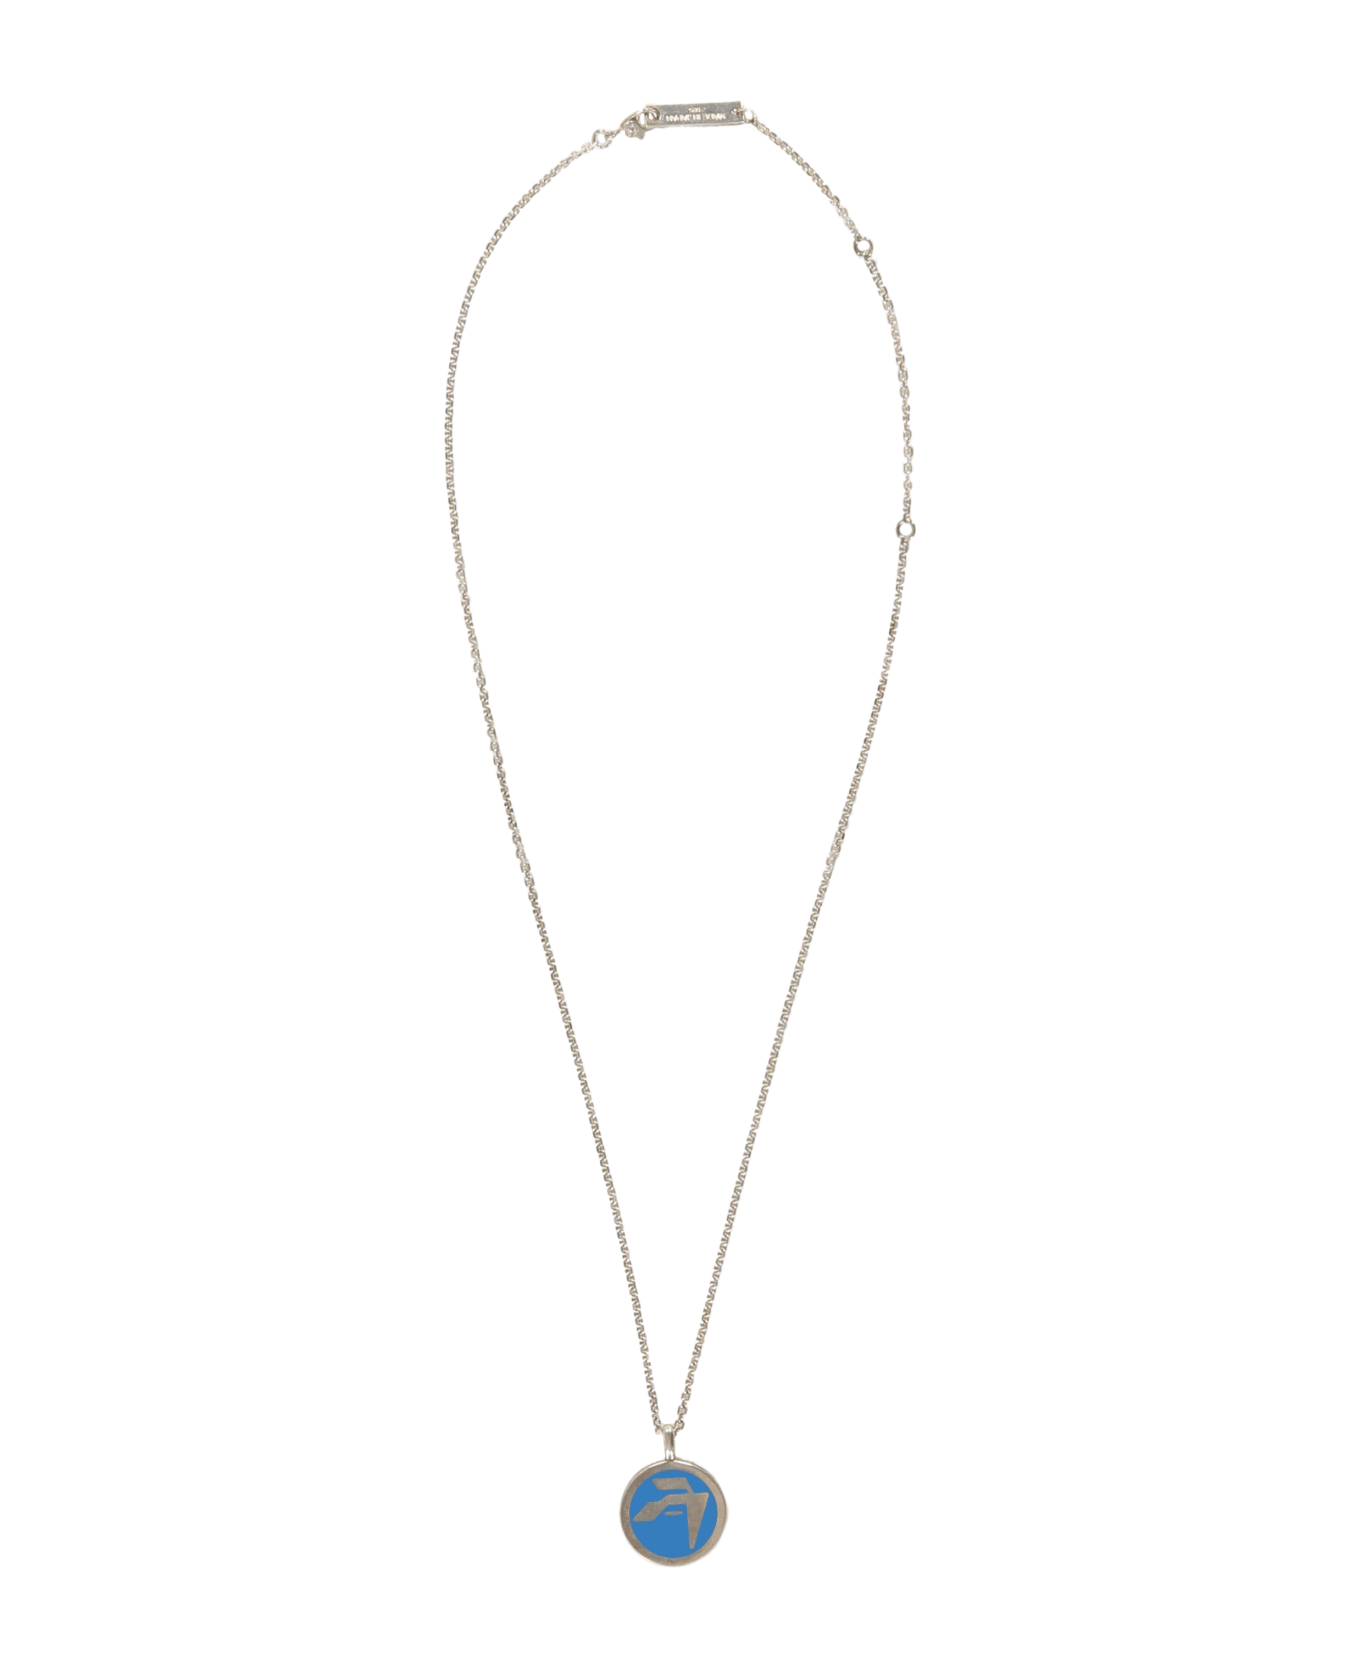 AMBUSH Chain Necklace With Decorative Pendant - silver